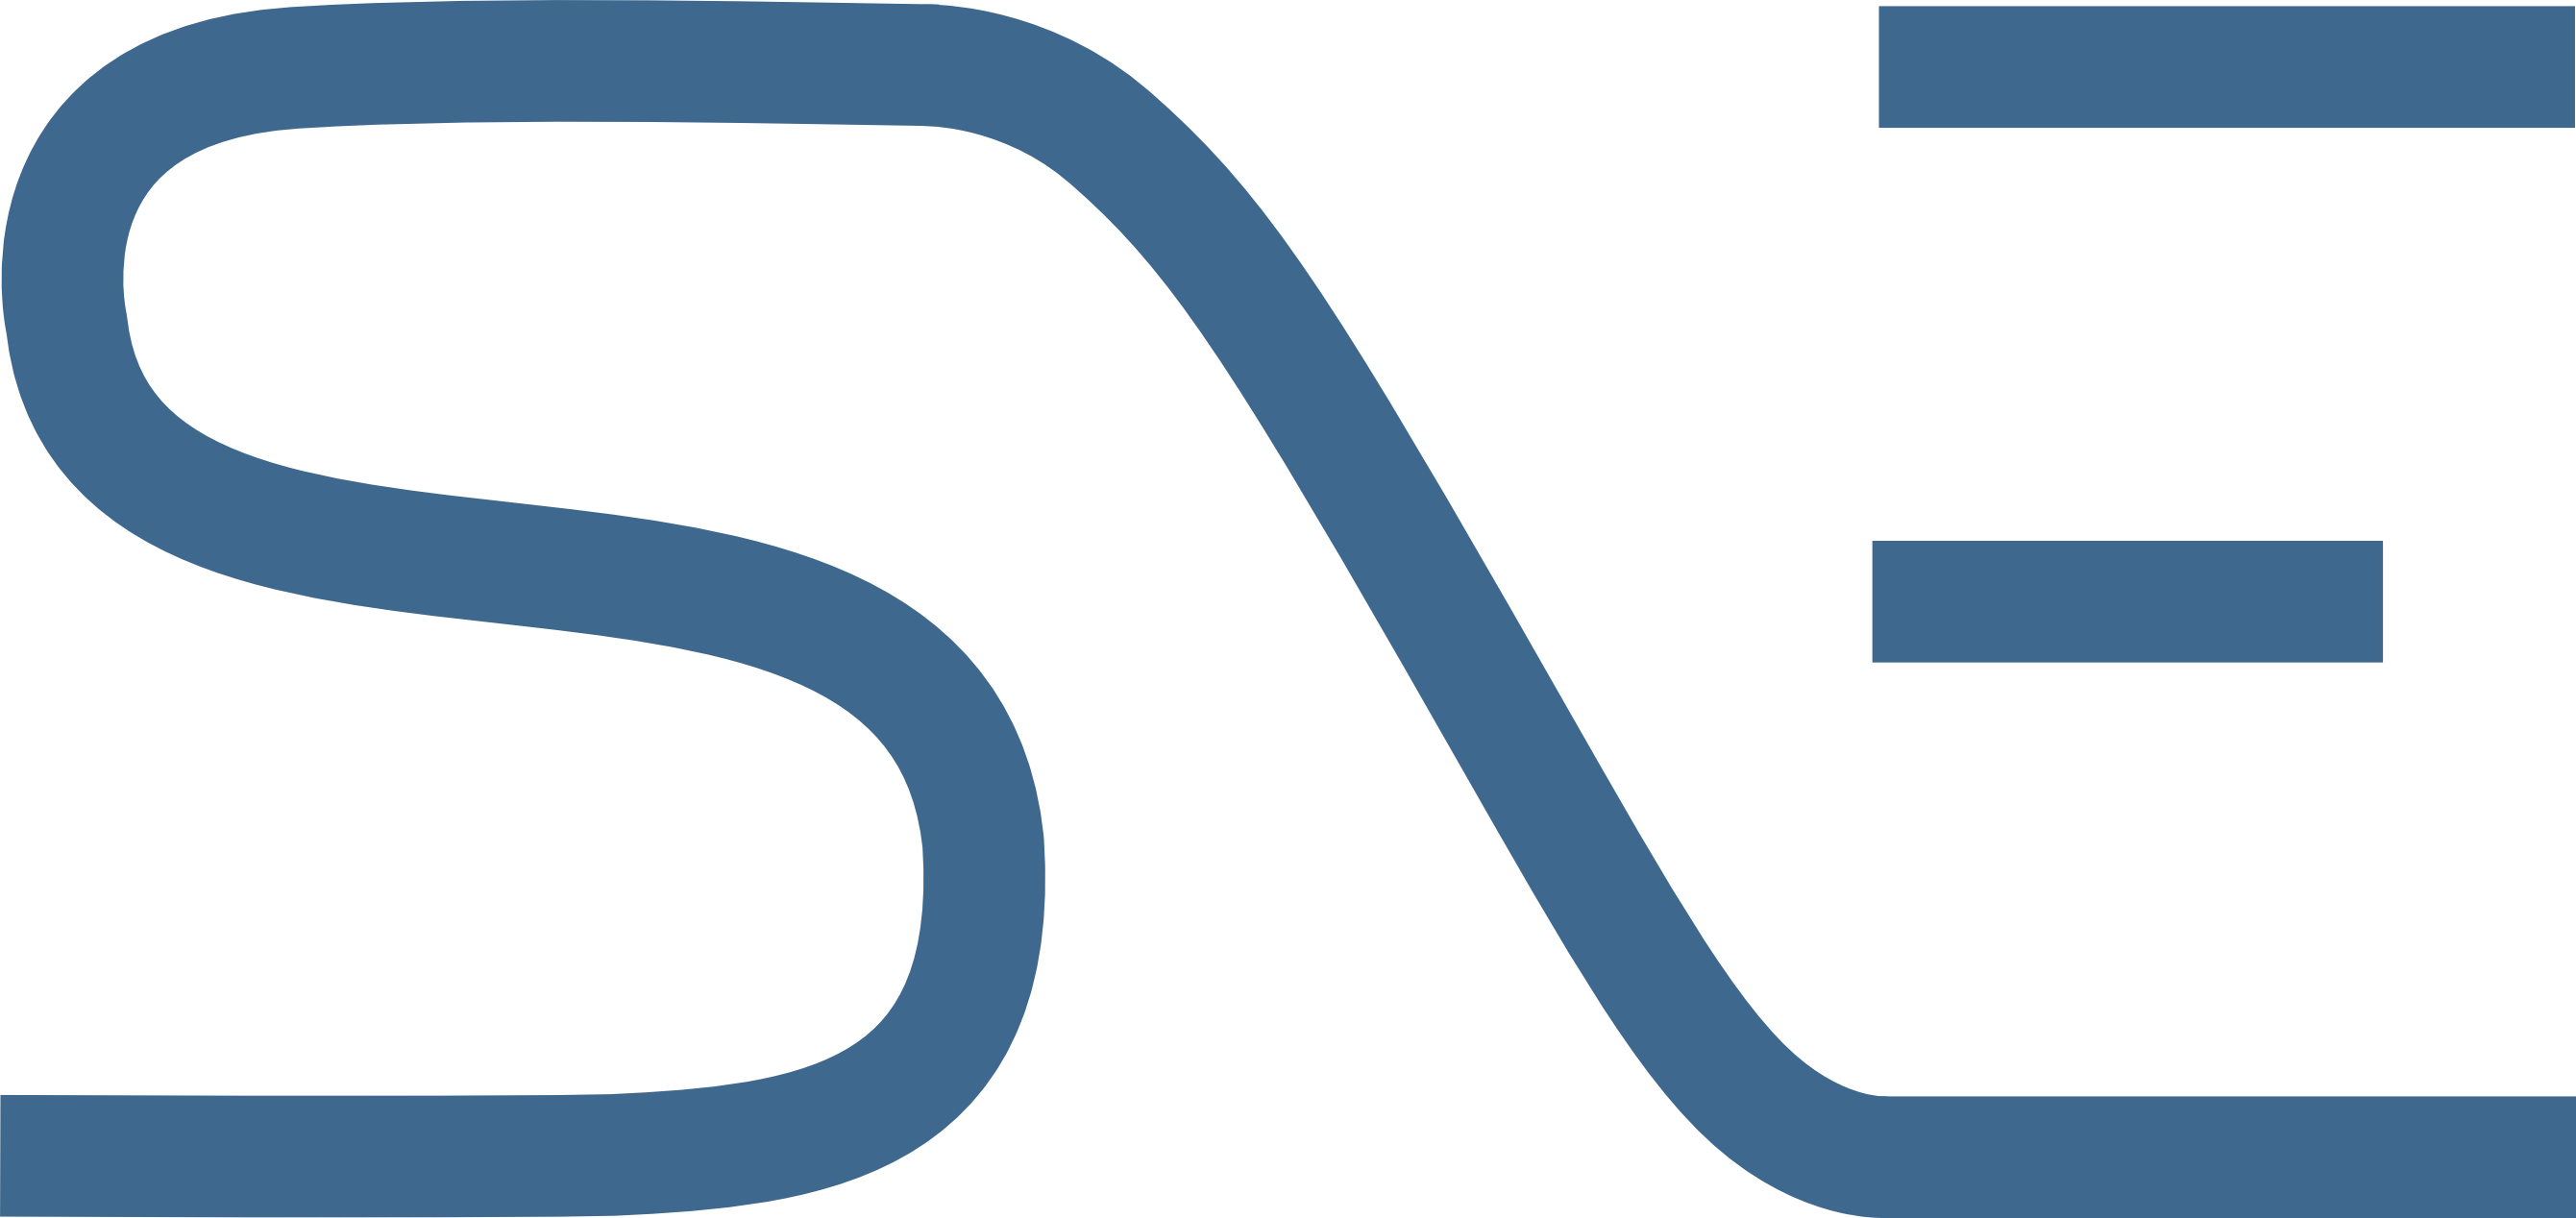 Logo Sne/logo Sne Blue - Logo Flat Png (2681x1268)